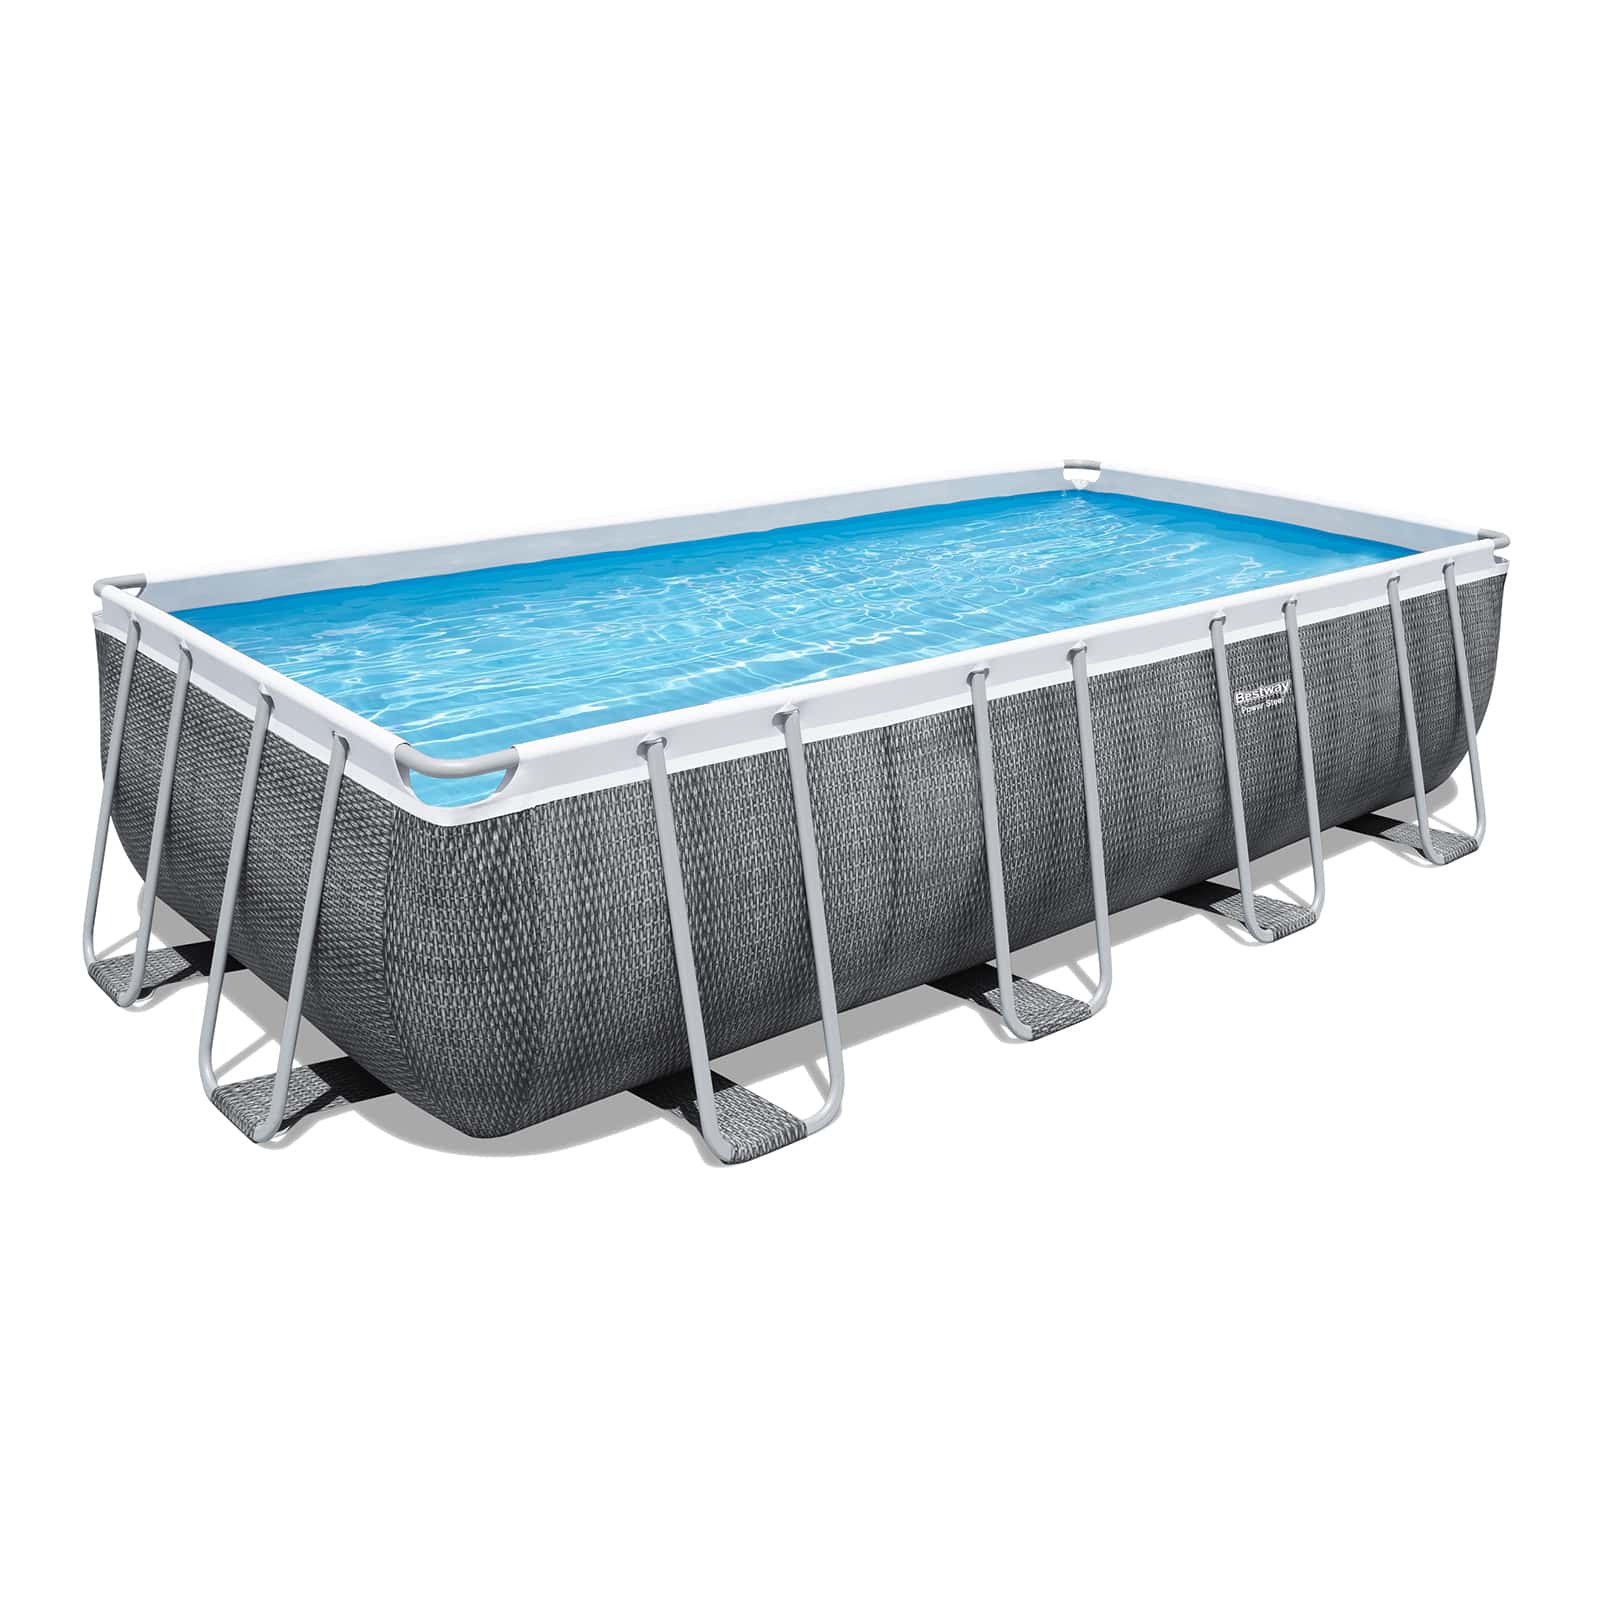 Conjunto de piscina sobre superficie Power Steel de Bestway de 5.49 m x 2.74 m x 1.22 m